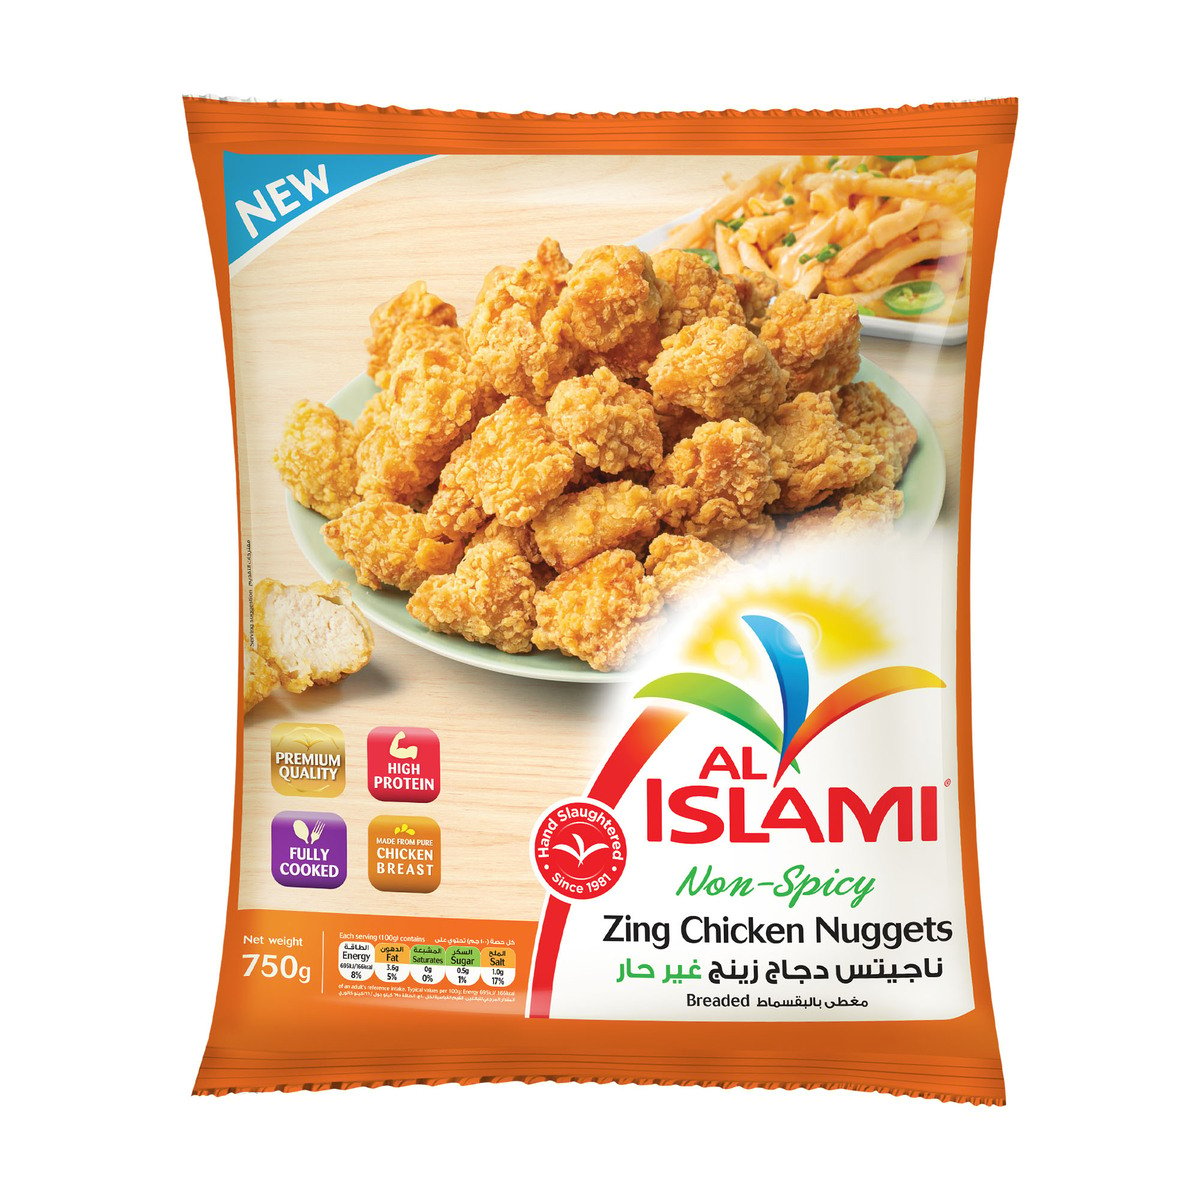 Al Islami Non-Spicy Zing Chicken Nuggets, 750 g